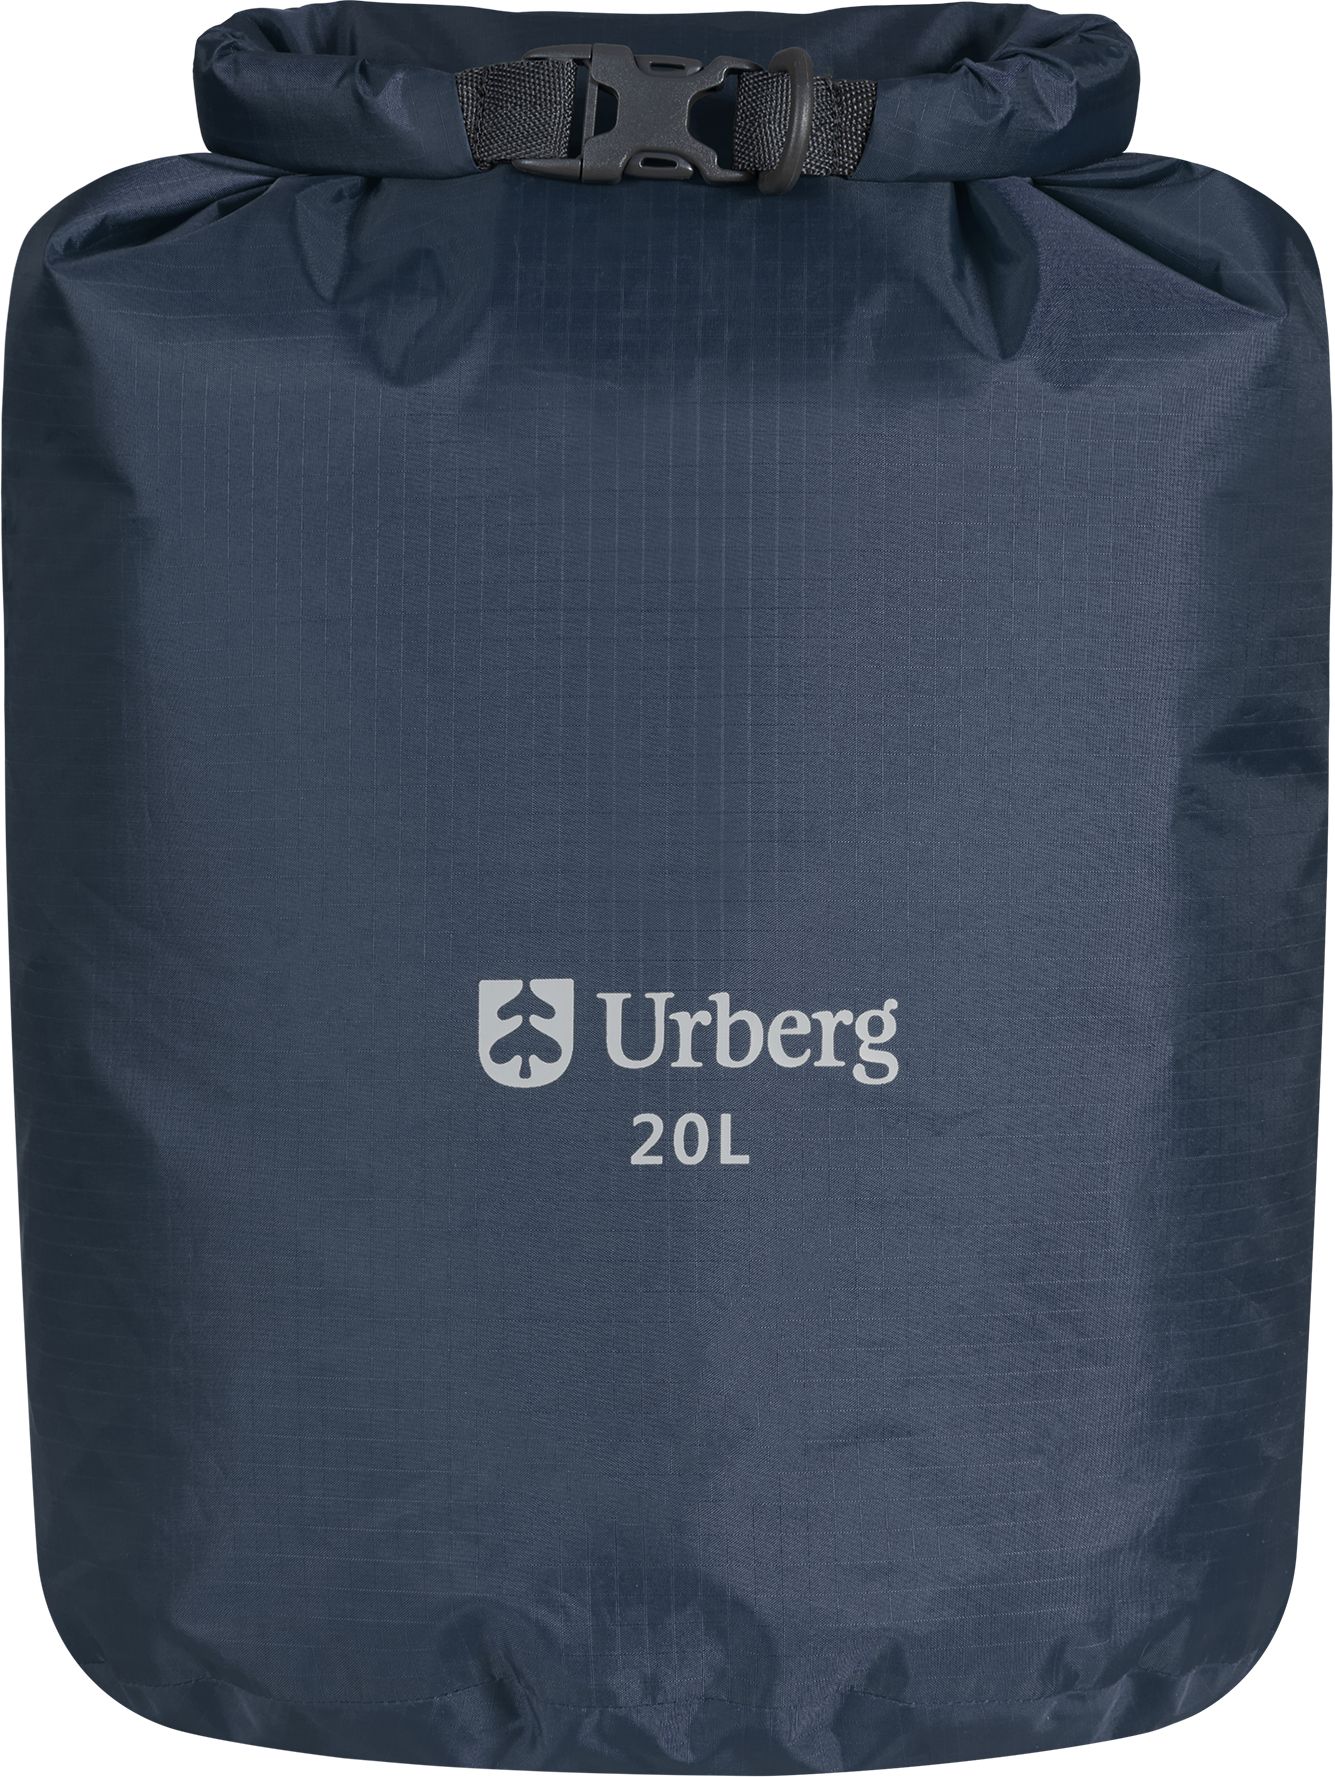 Urberg Dry Bag 20 L Midnight Navy